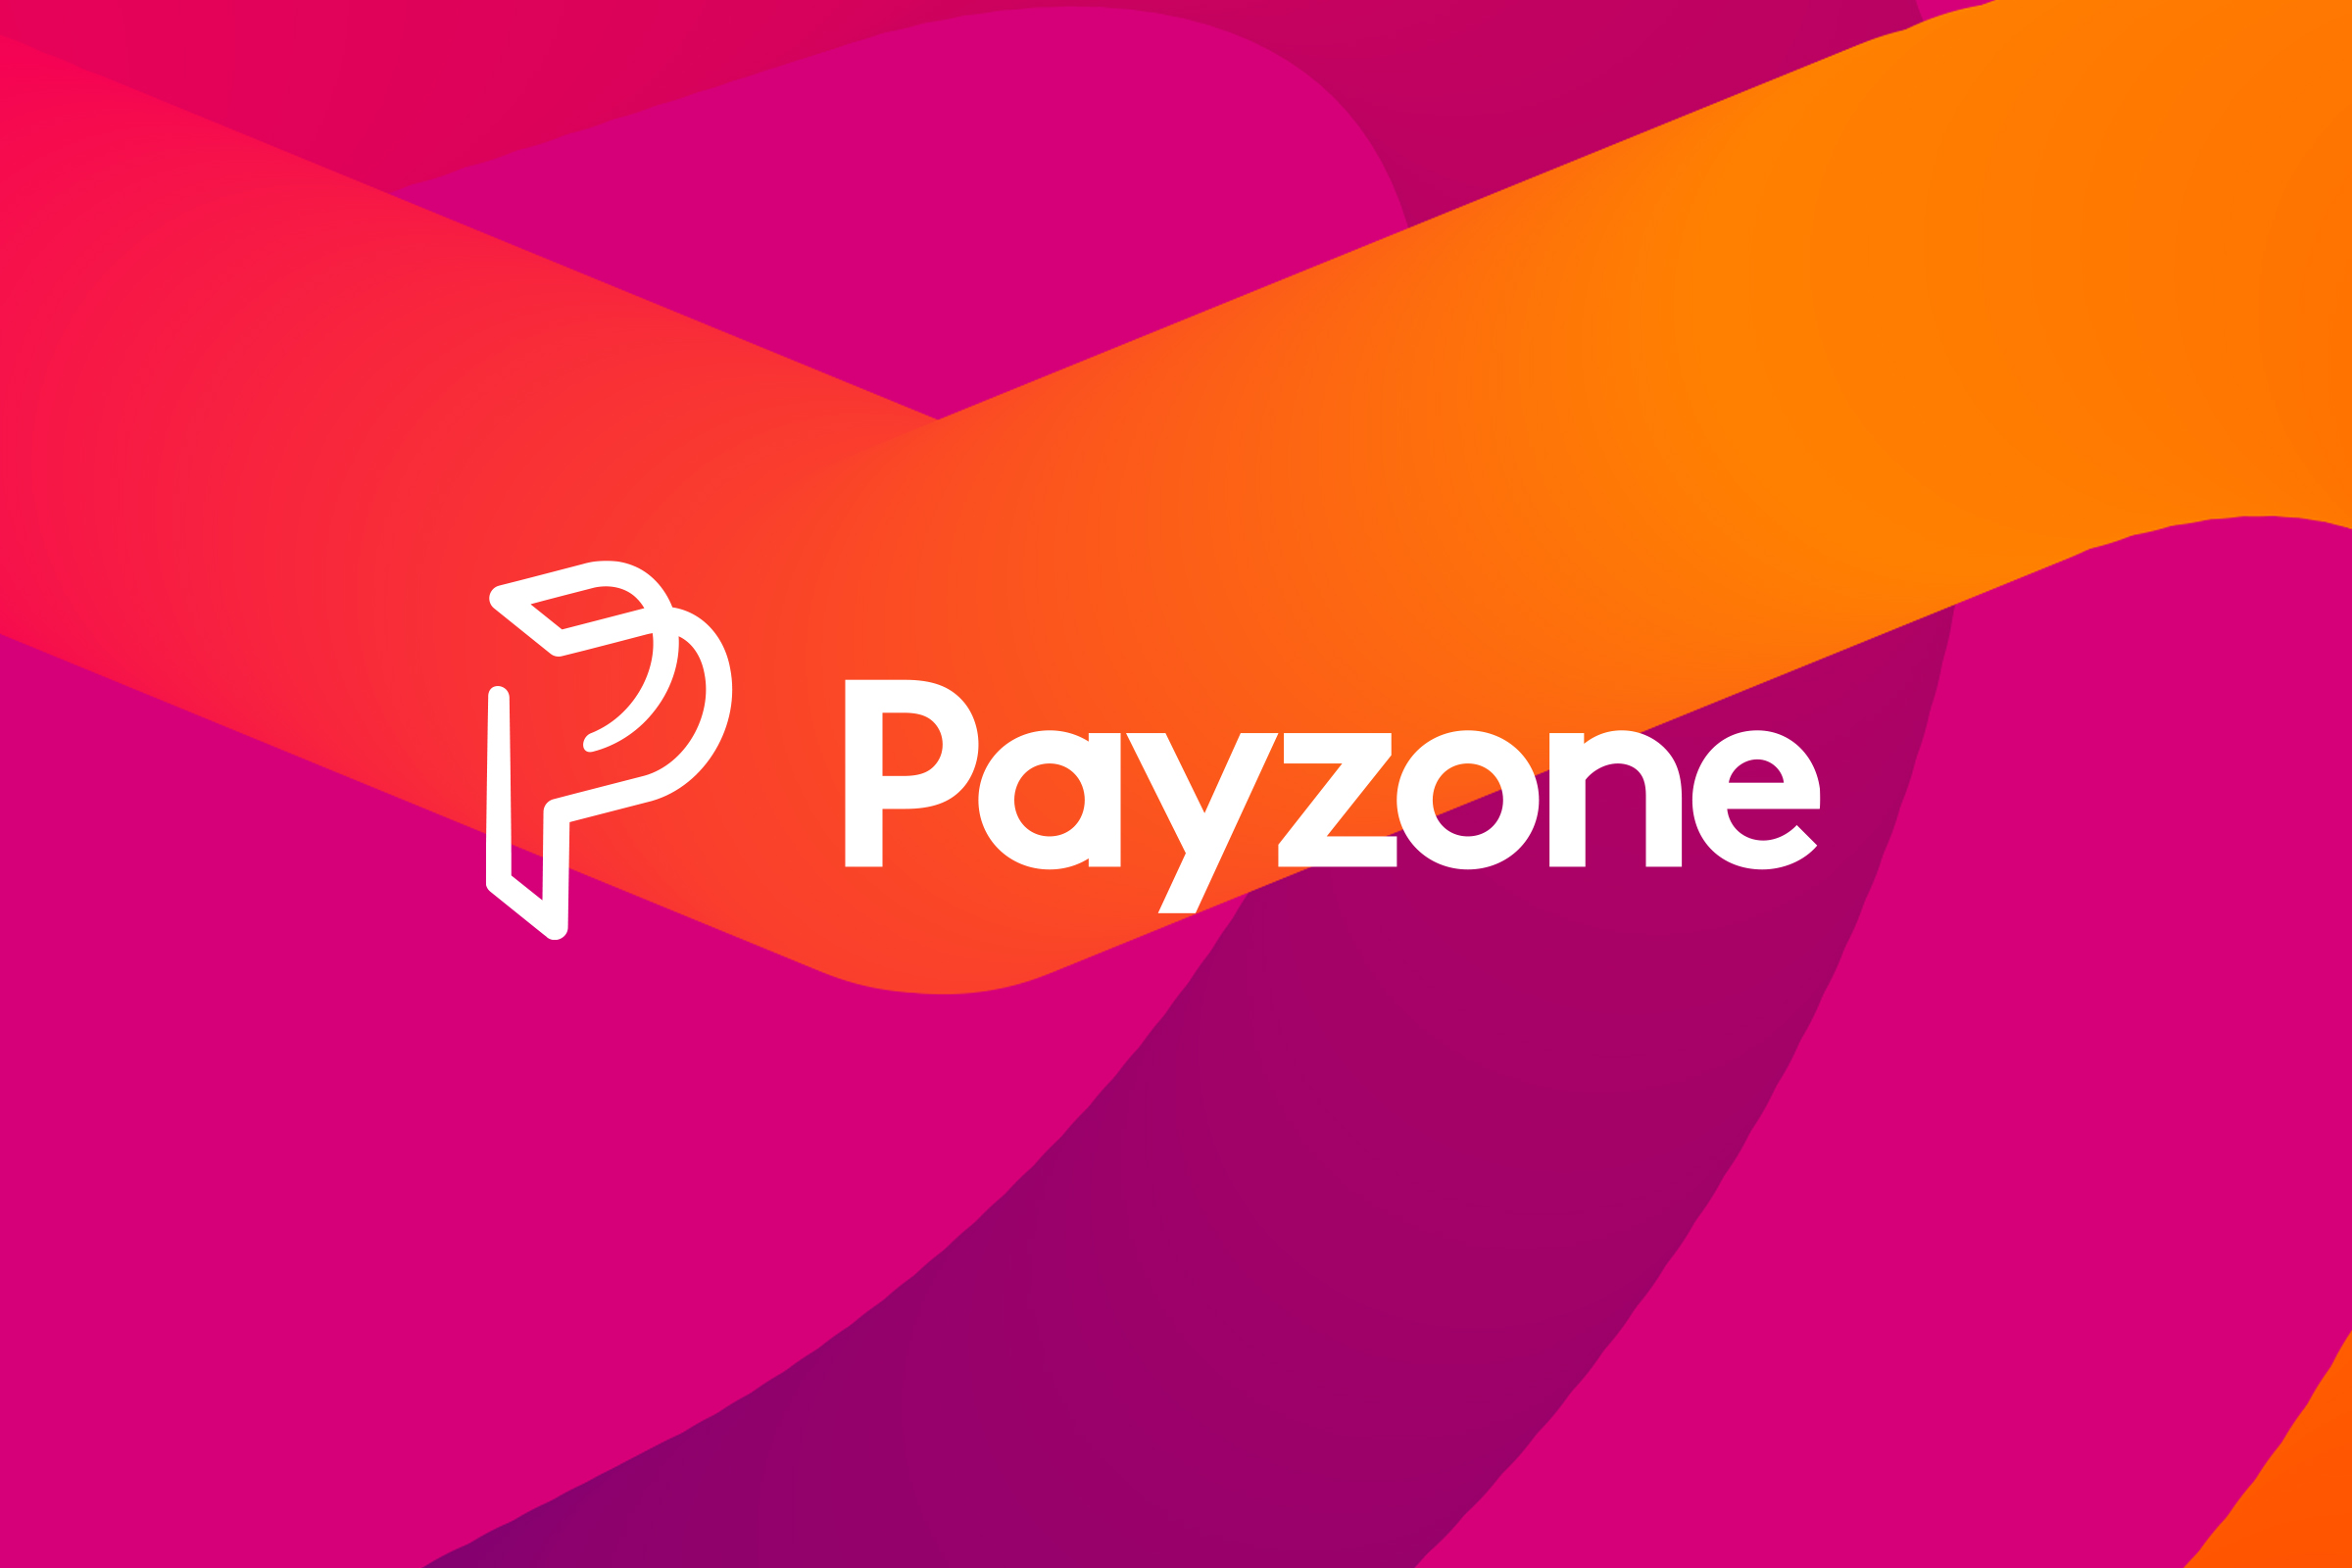 Payzone Patterns 02